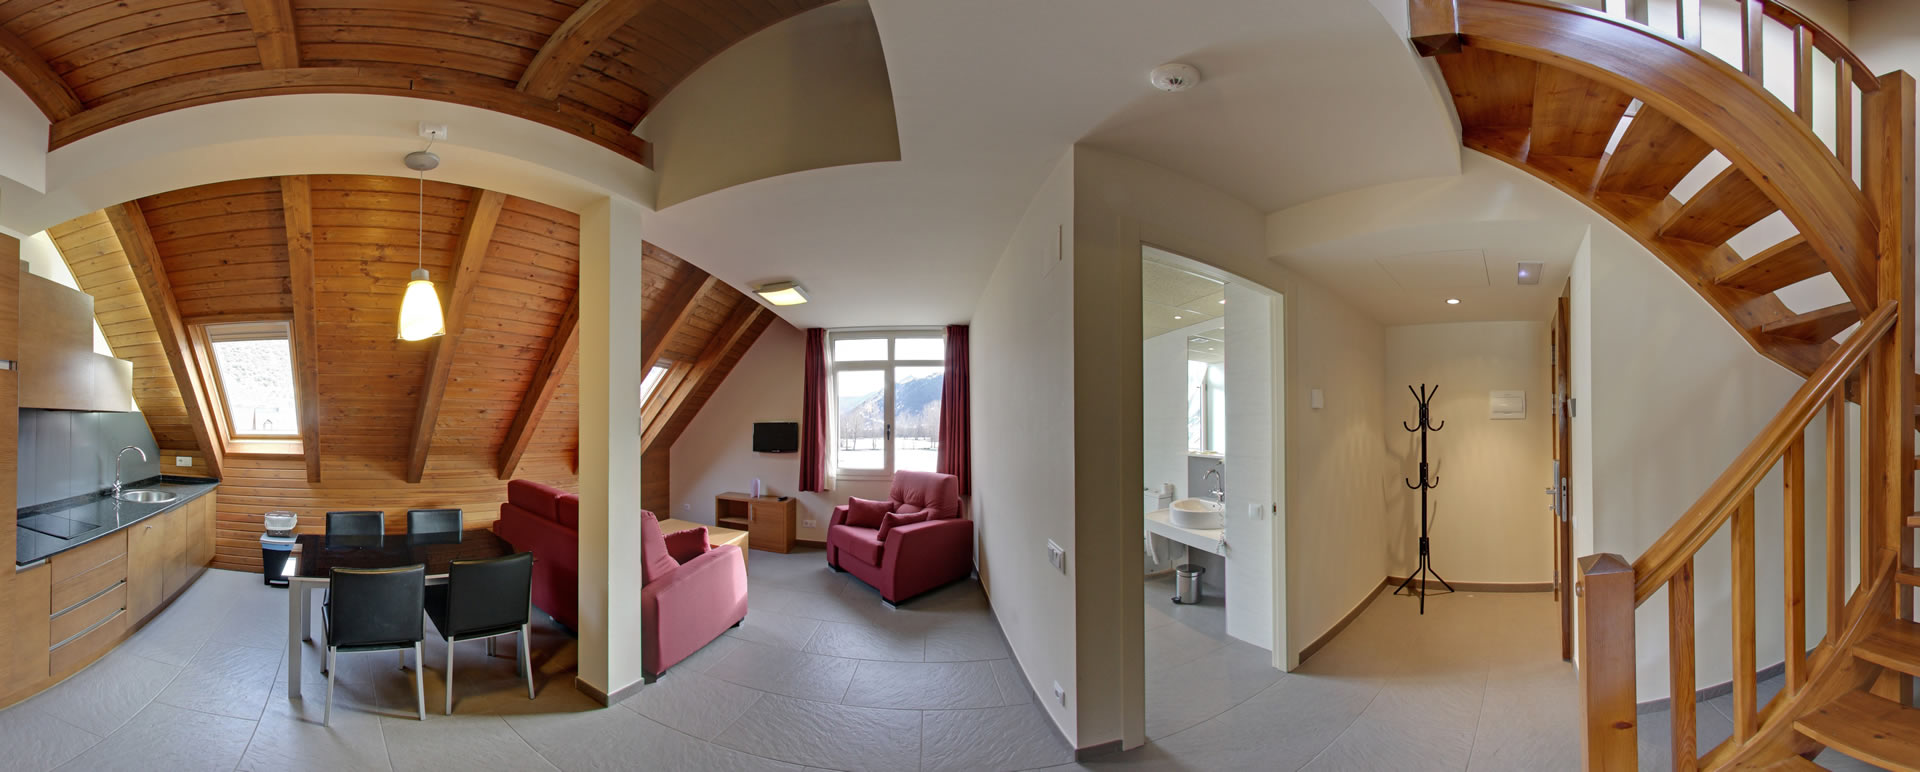 Apartament Dúplex (2 dormitoris) amb accés al SPA